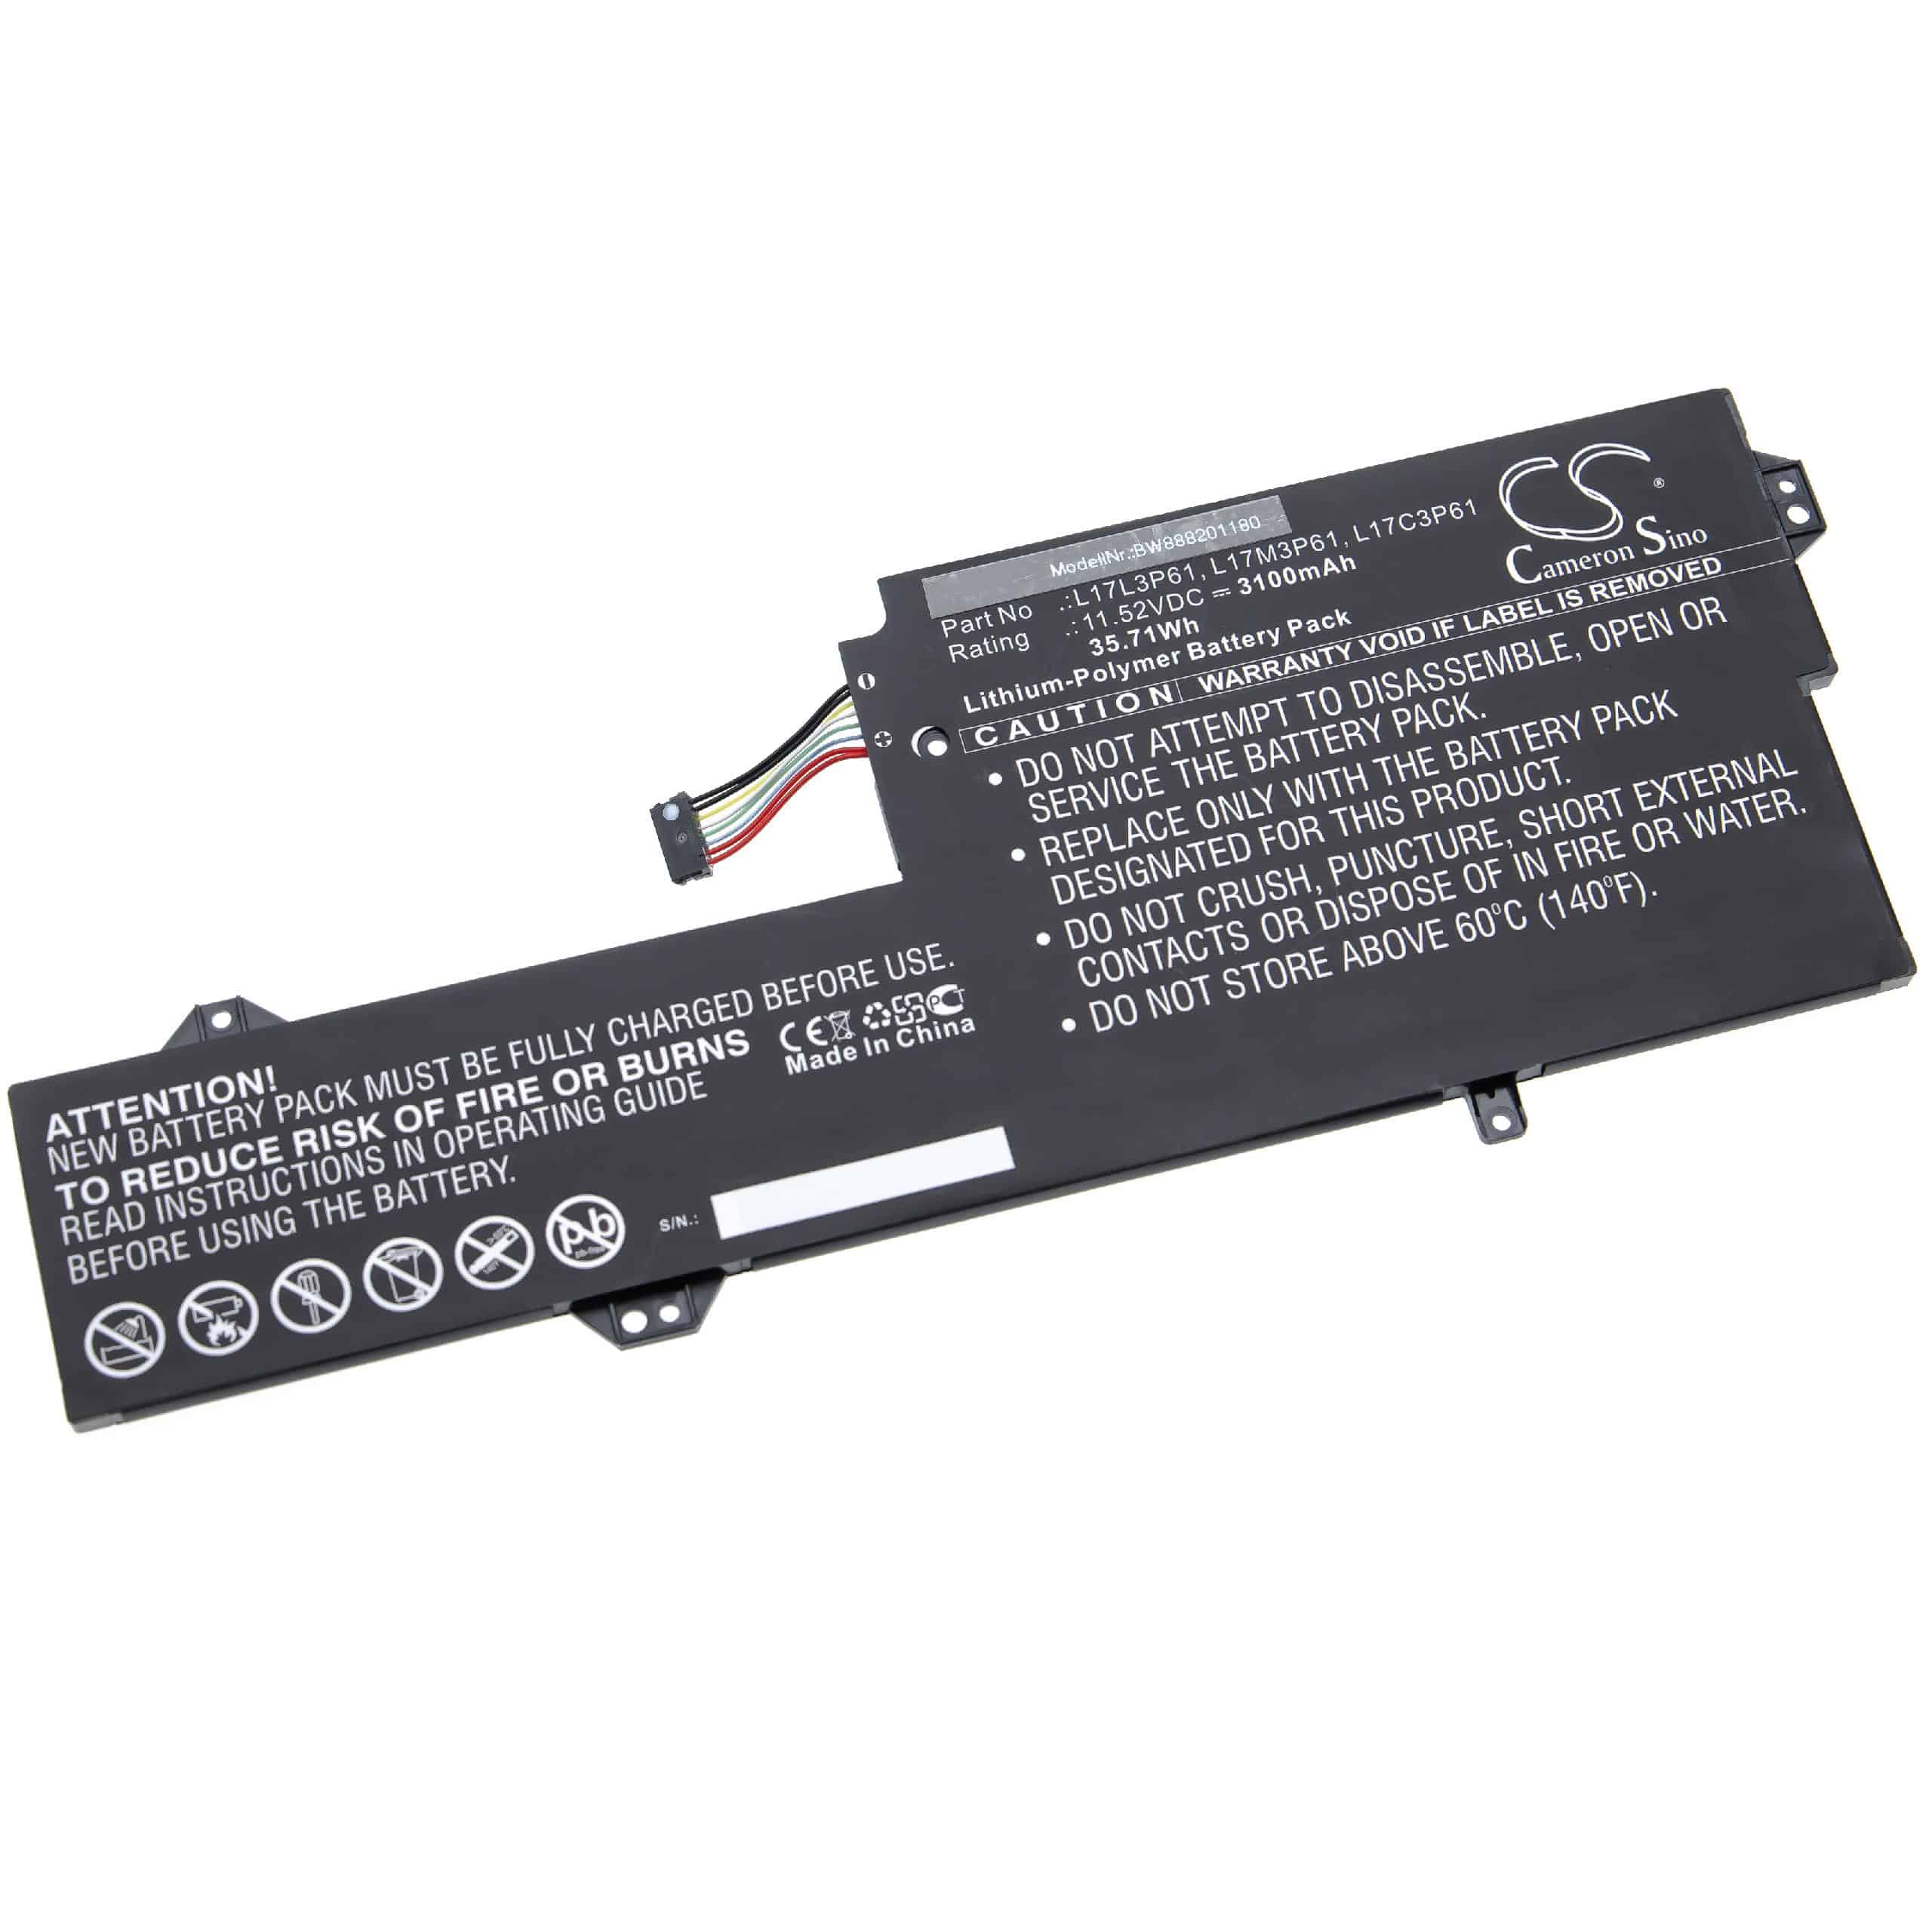 Batterie remplace Lenovo L17L3P61, L17C3P61 pour ordinateur portable - 3100mAh 11,52V Li-polymère, noir